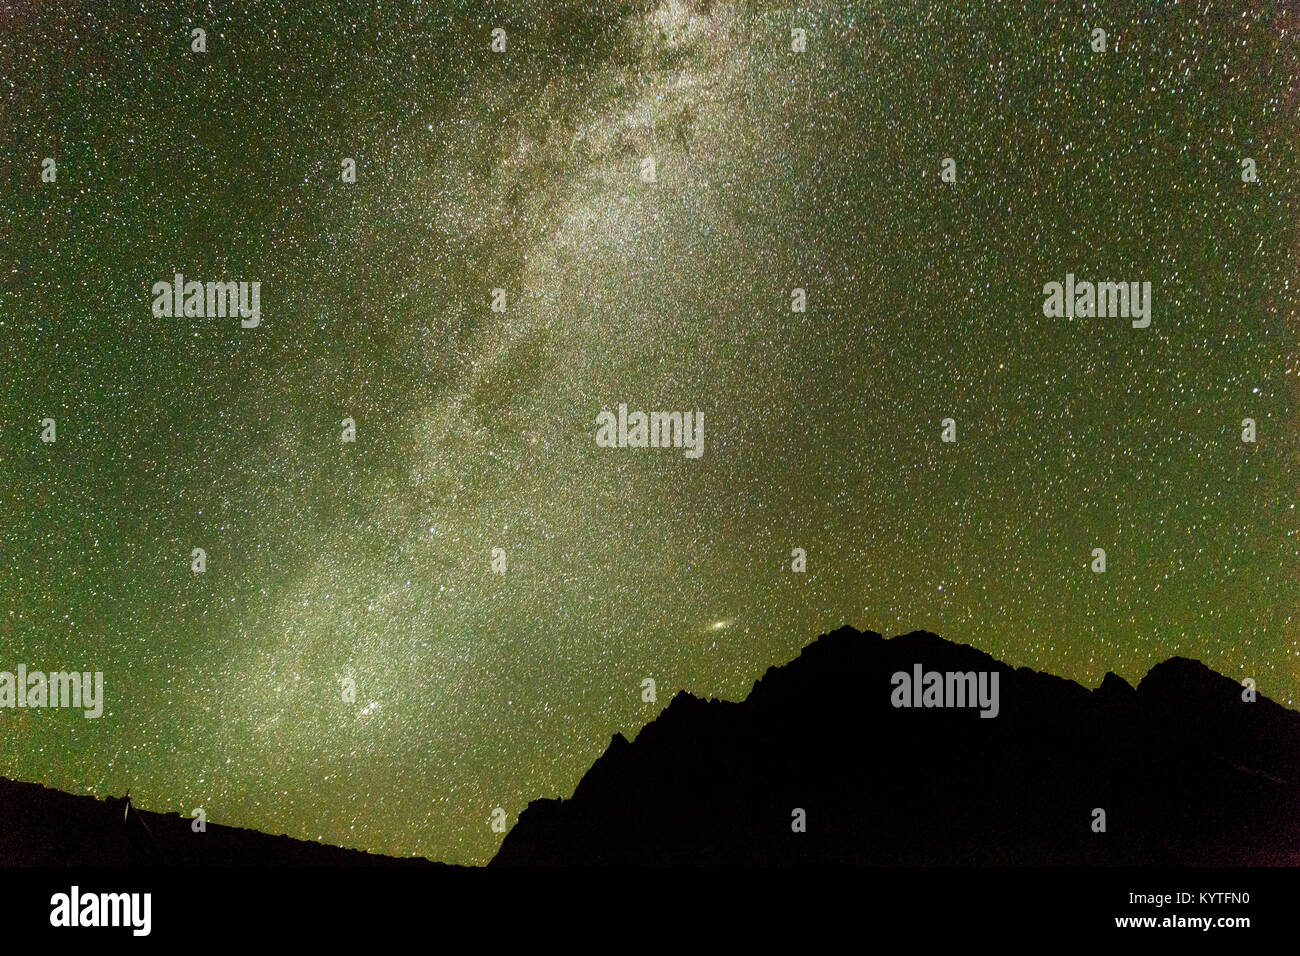 Milchstraße ab Satsar Campingplatz auf dem Kaschmir Great Lakes Trek in Sonamarg, Jammu und Kaschmir, Indien gesehen. Himmel voller Sterne, Astro Foto Stockfoto